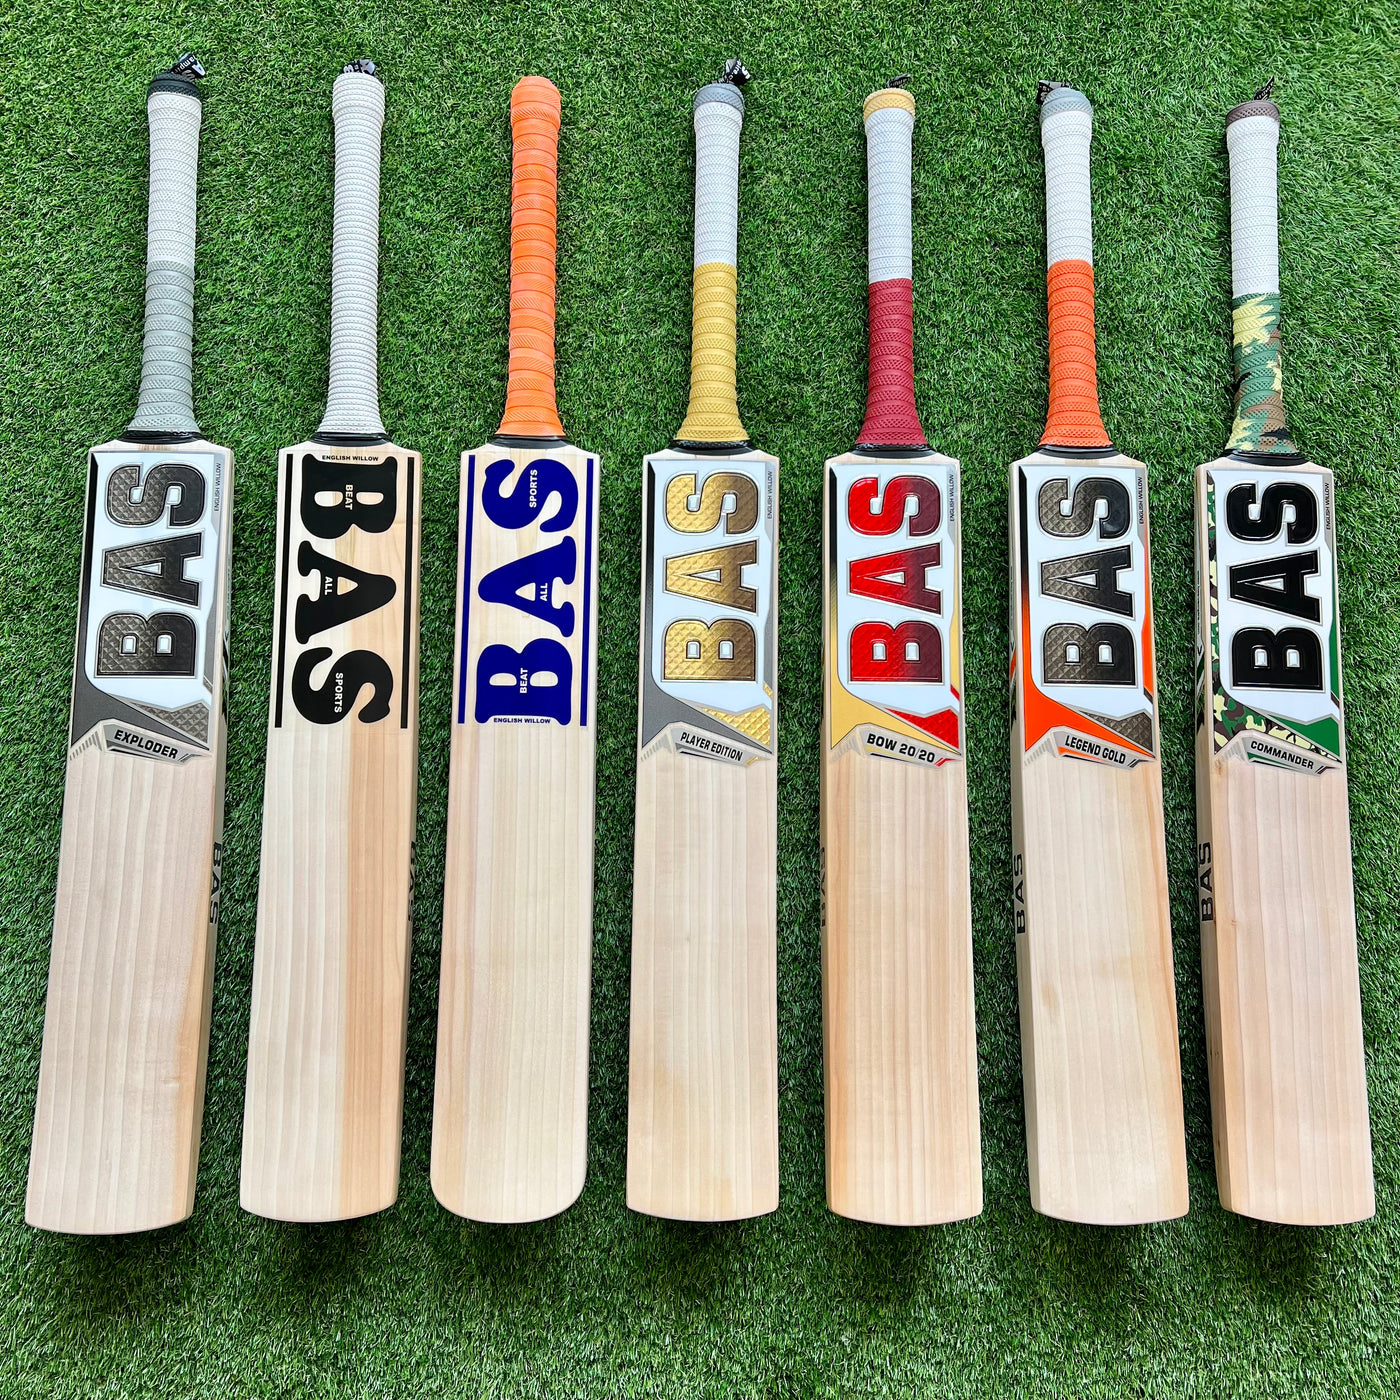 Buy BAS Vampire Cricket Bats | BAS Cricket | BAS Vampire Cricket | Buy BAS Cricket Equipment | BAS Cricket Kit | BAS Cricket Bat UK | BAS Cricket Pads